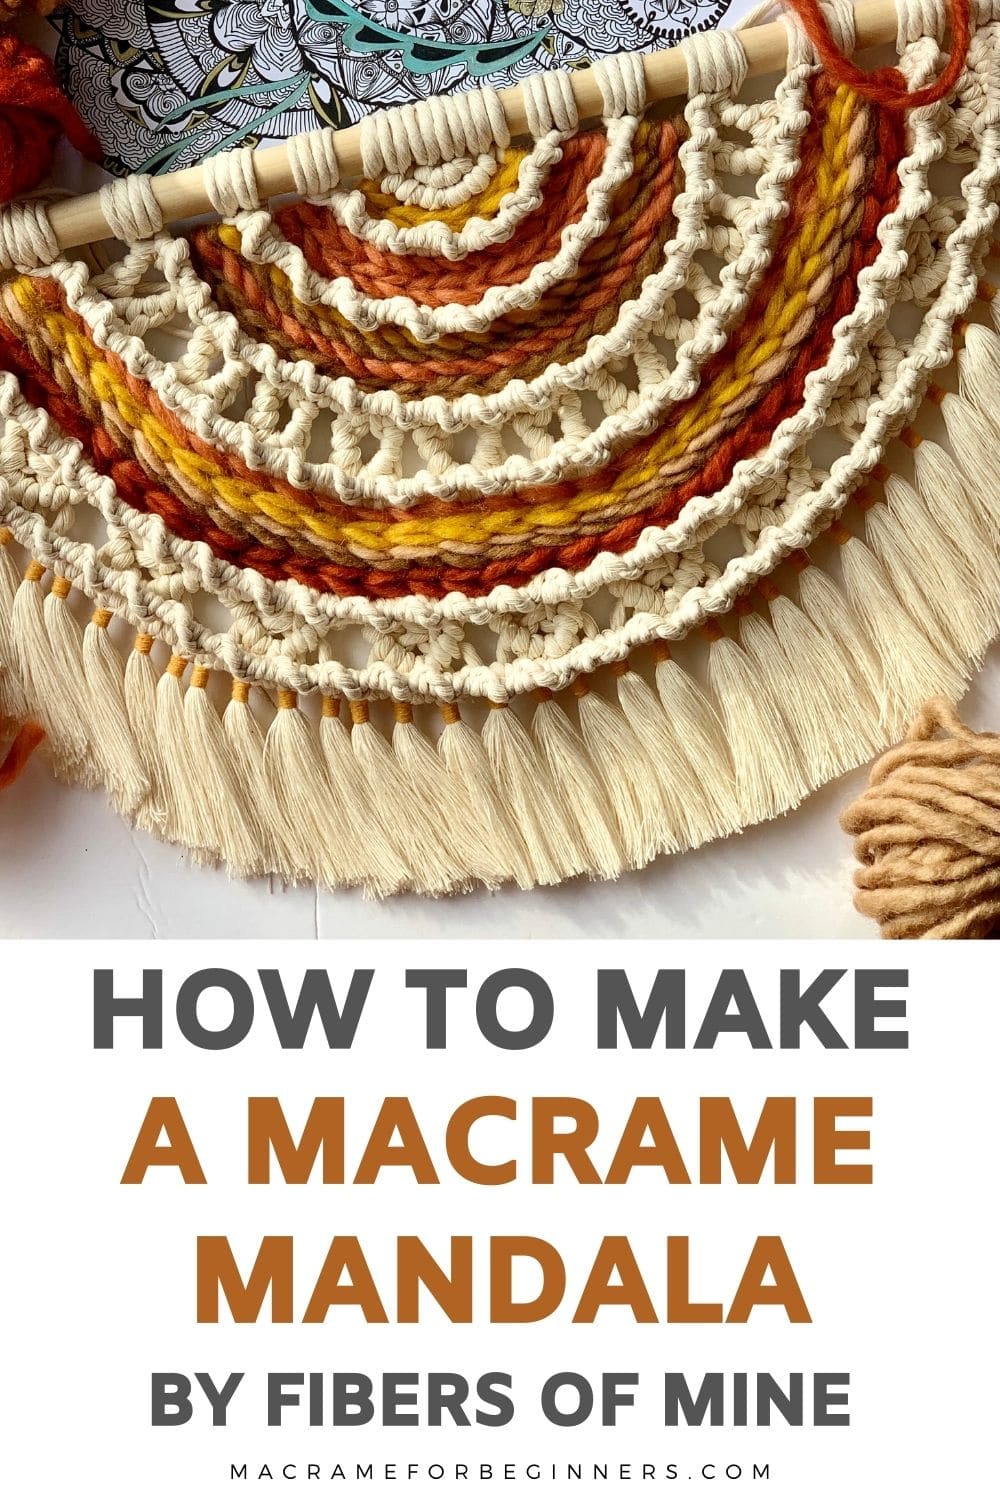 Macrame Mandala Tutorial by Fibers of Mine - Macrame for Beginners